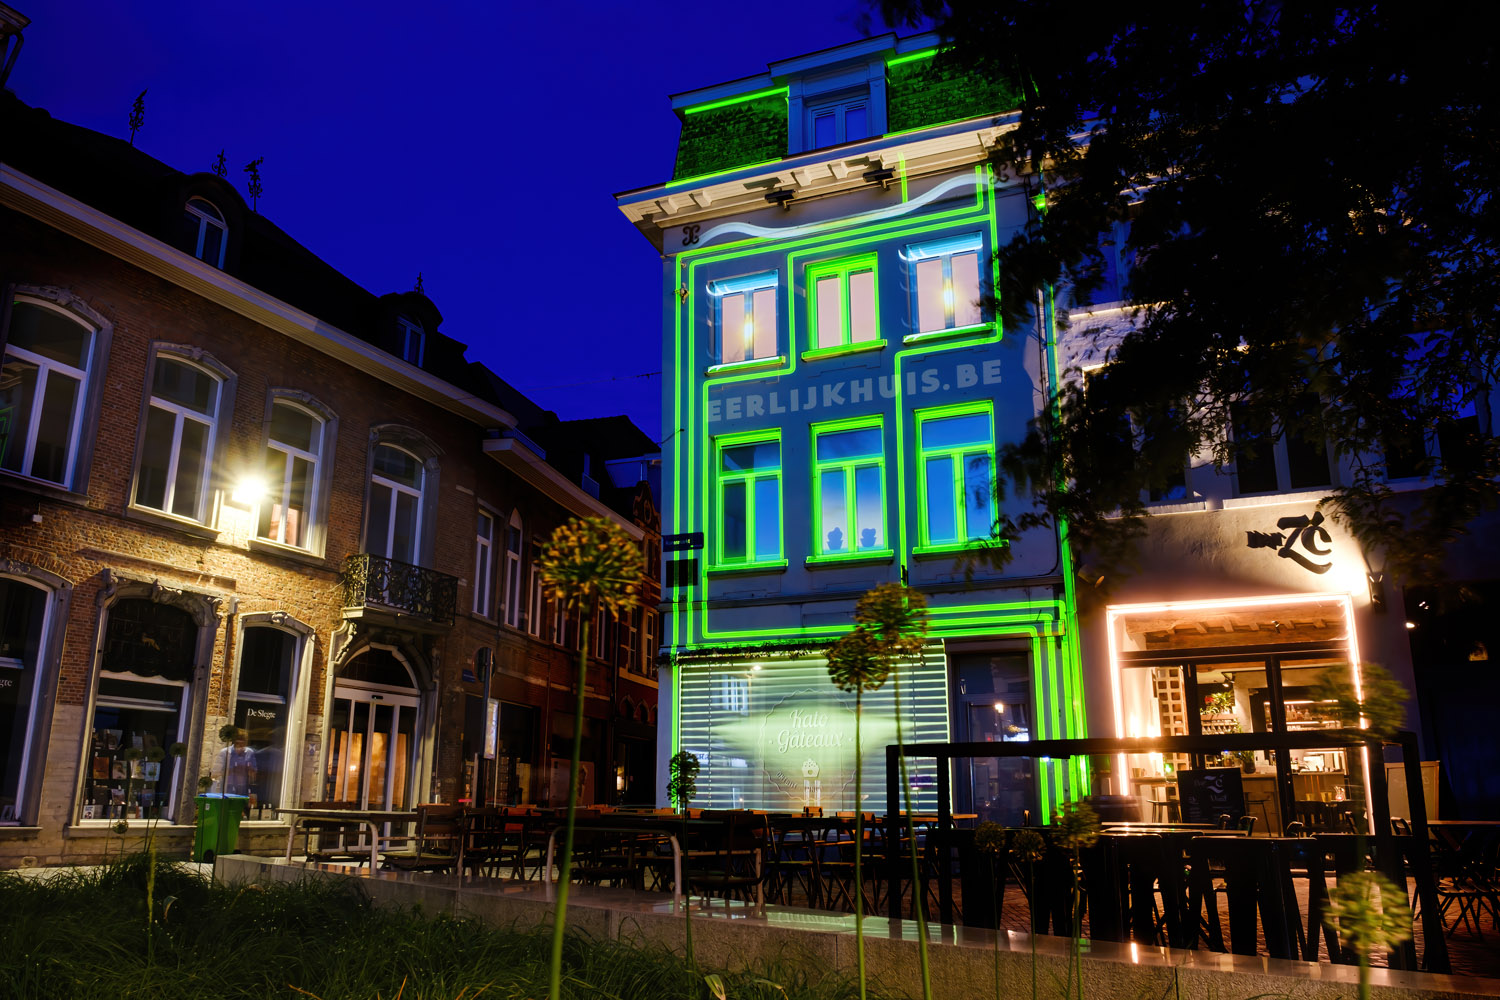 Projectie eerlijk huis op gevel korenmarkt te Mechelen